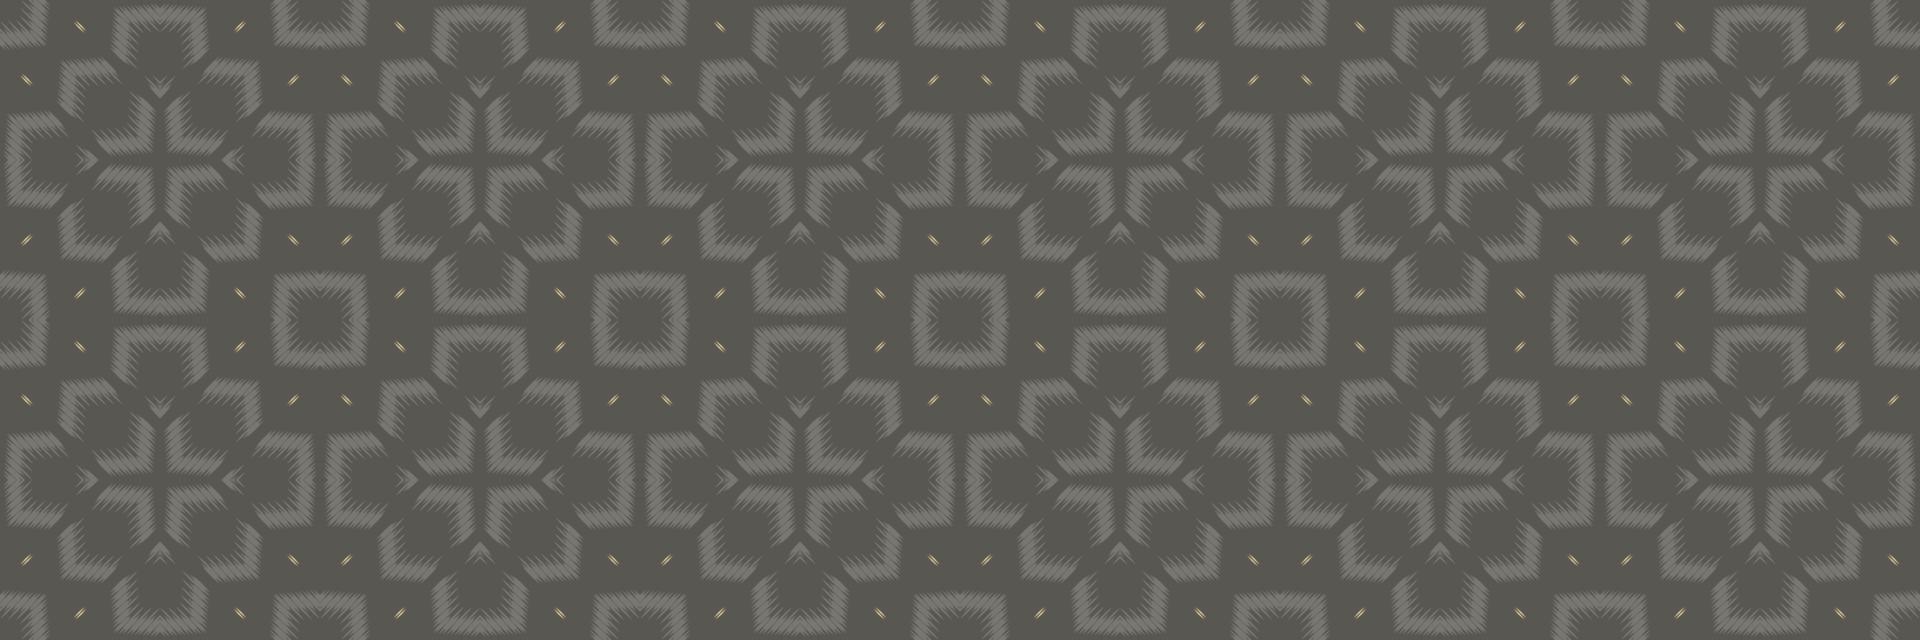 batik têxtil ikkat ou ikat vetor padrão sem costura design de vetor digital para impressão saree kurti borneo tecido borda escova símbolos amostras algodão